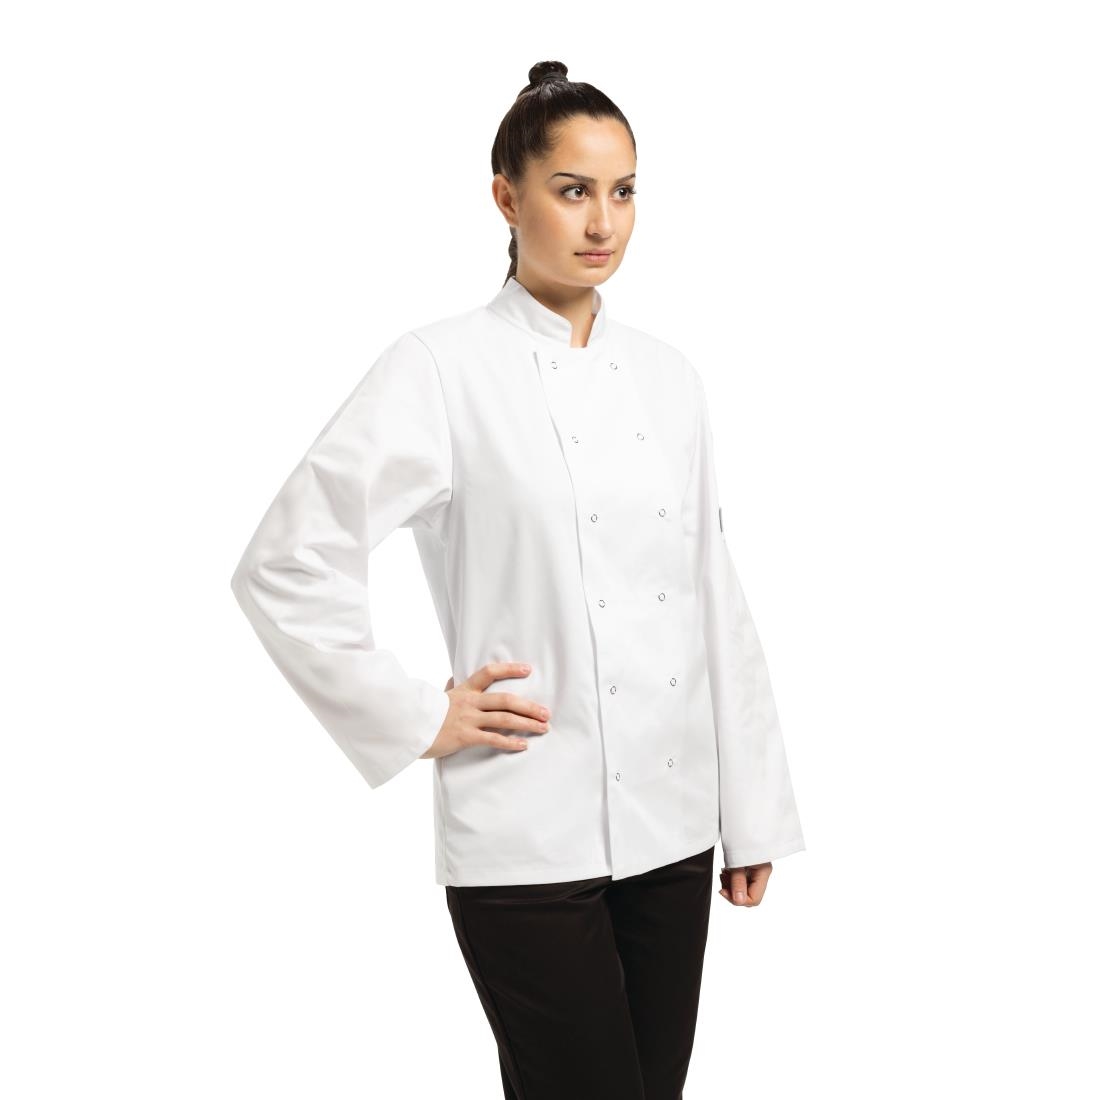 Whites Vegas Unisex Chefs Jacket Long Sleeve White 3XL